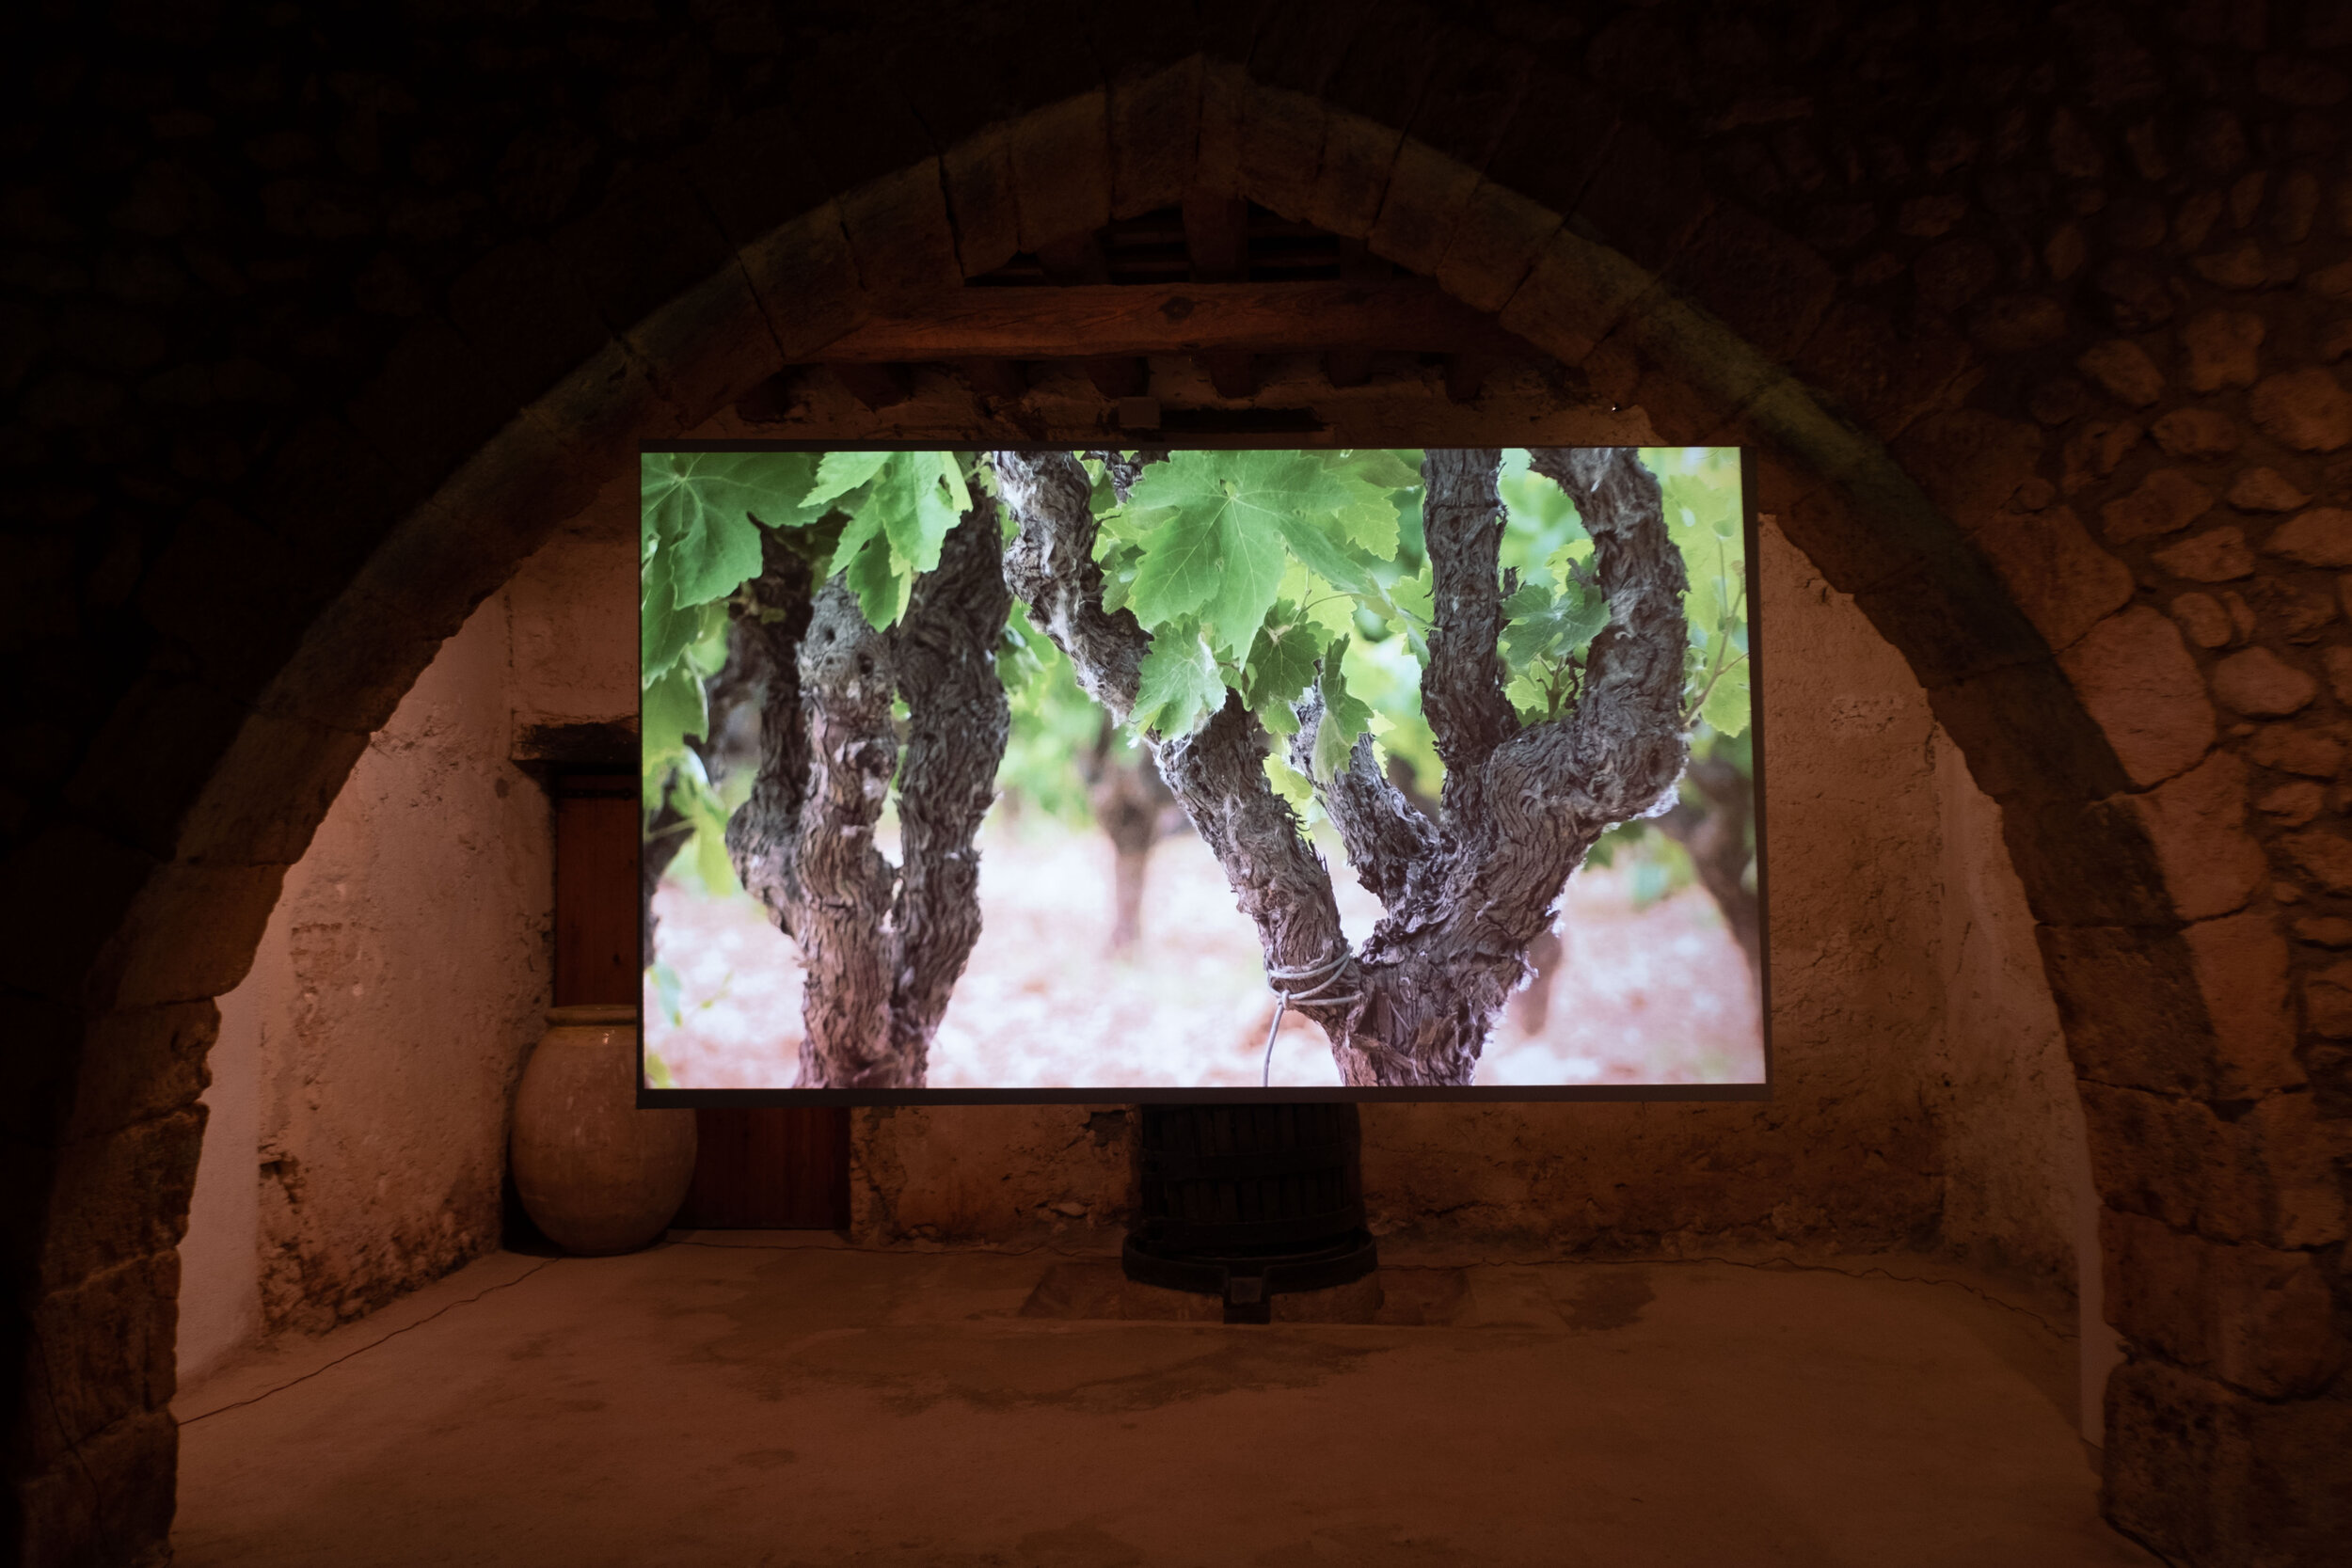  Vista d’un espai de la galeria amb la projecció del vídeo  “1 x 2” (2019)  realitzat per Miralda i Muntadas. 